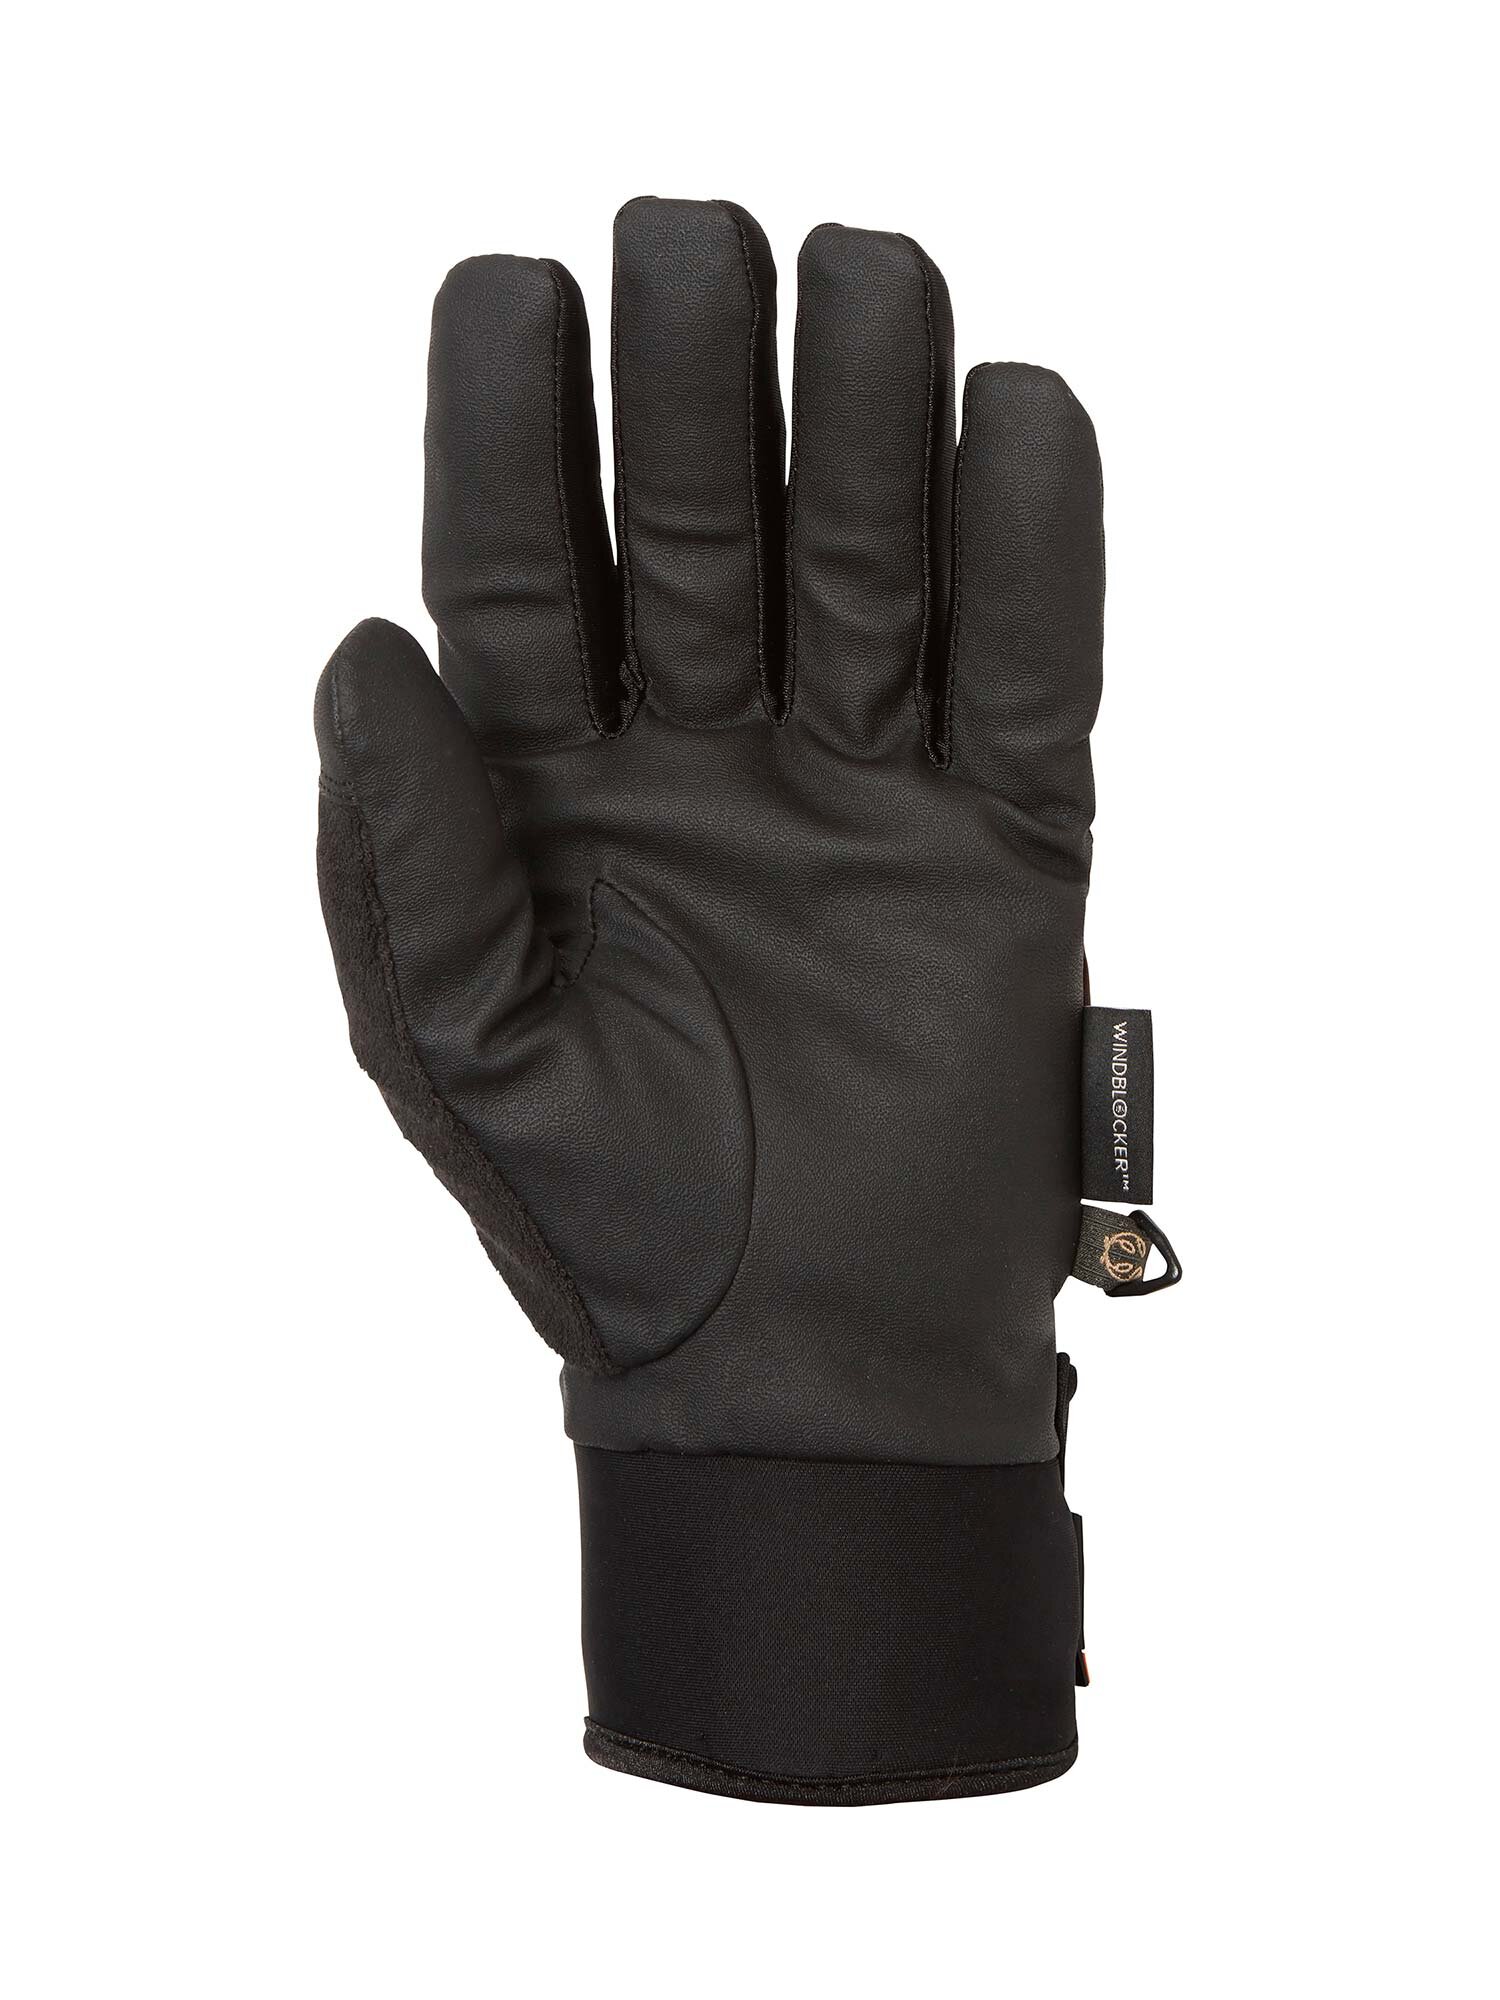 Waterproof Shooting Gloves - Chevalier